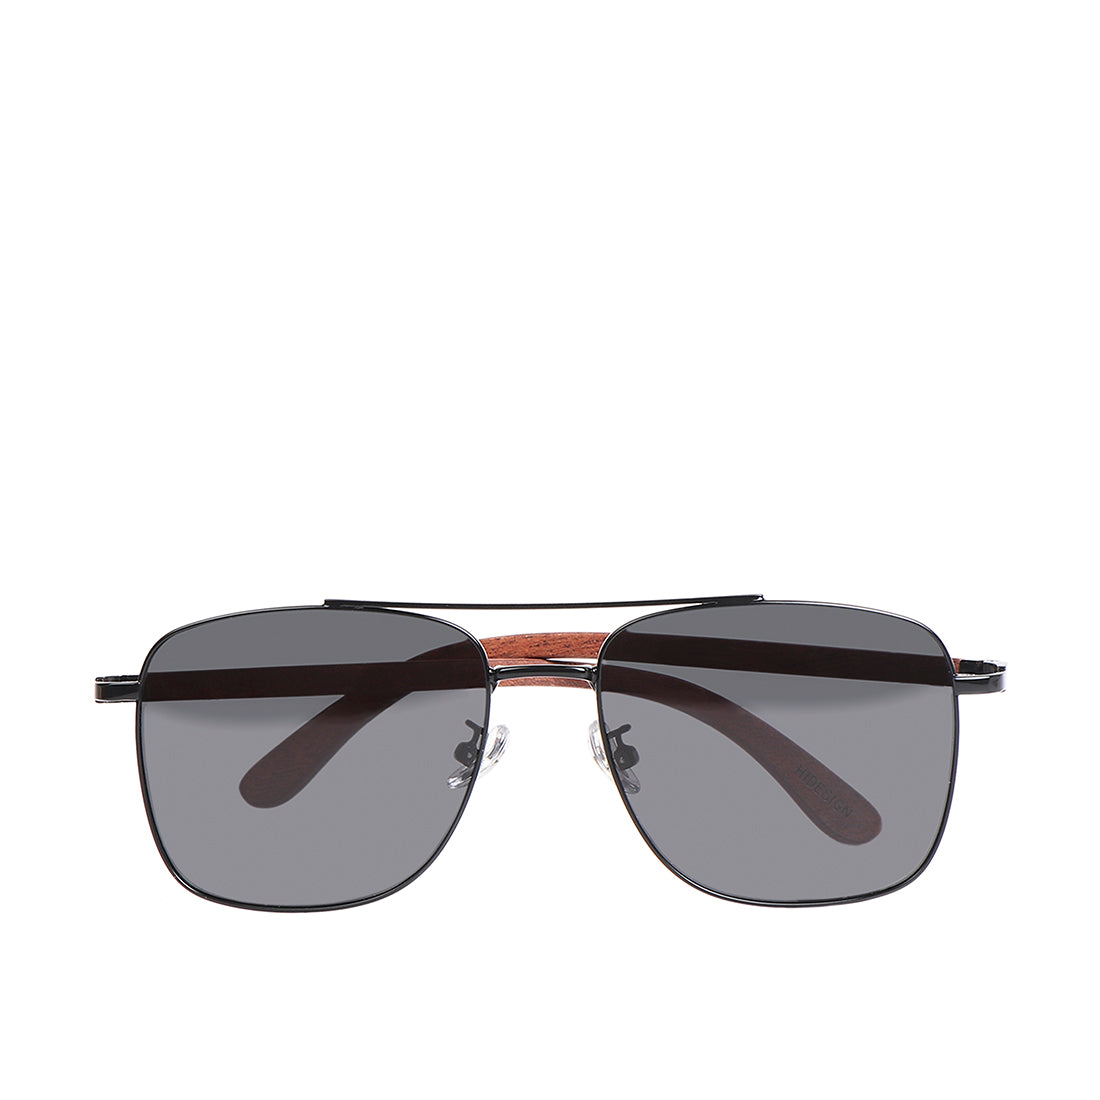 Sunglasses: Oval Sunglasses, Acetate Imitation Pearls — Fashion